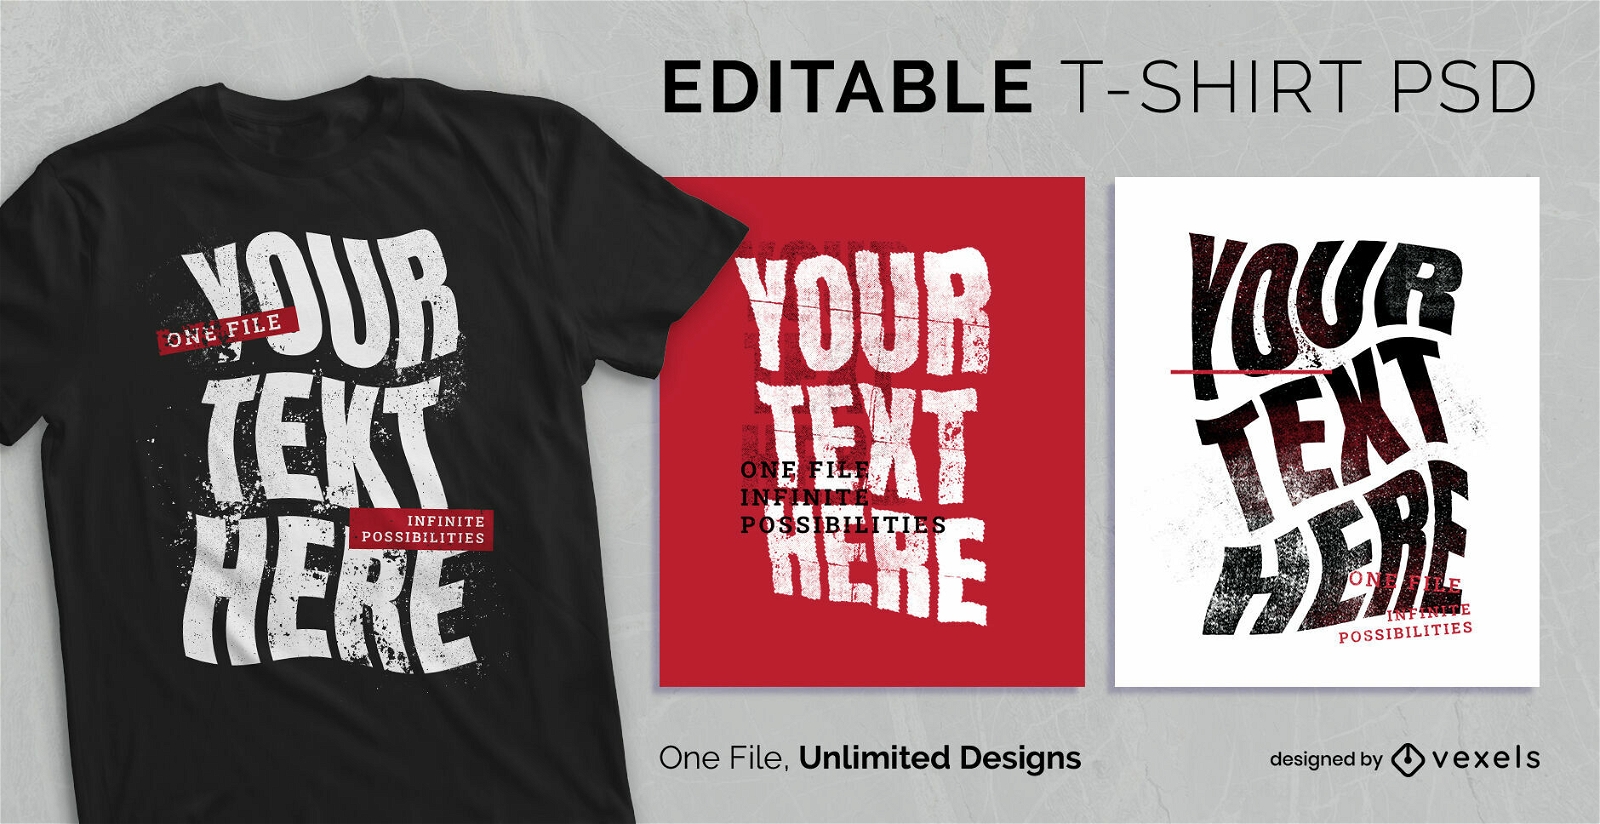 Grunge textured text scalable t-shirt psd